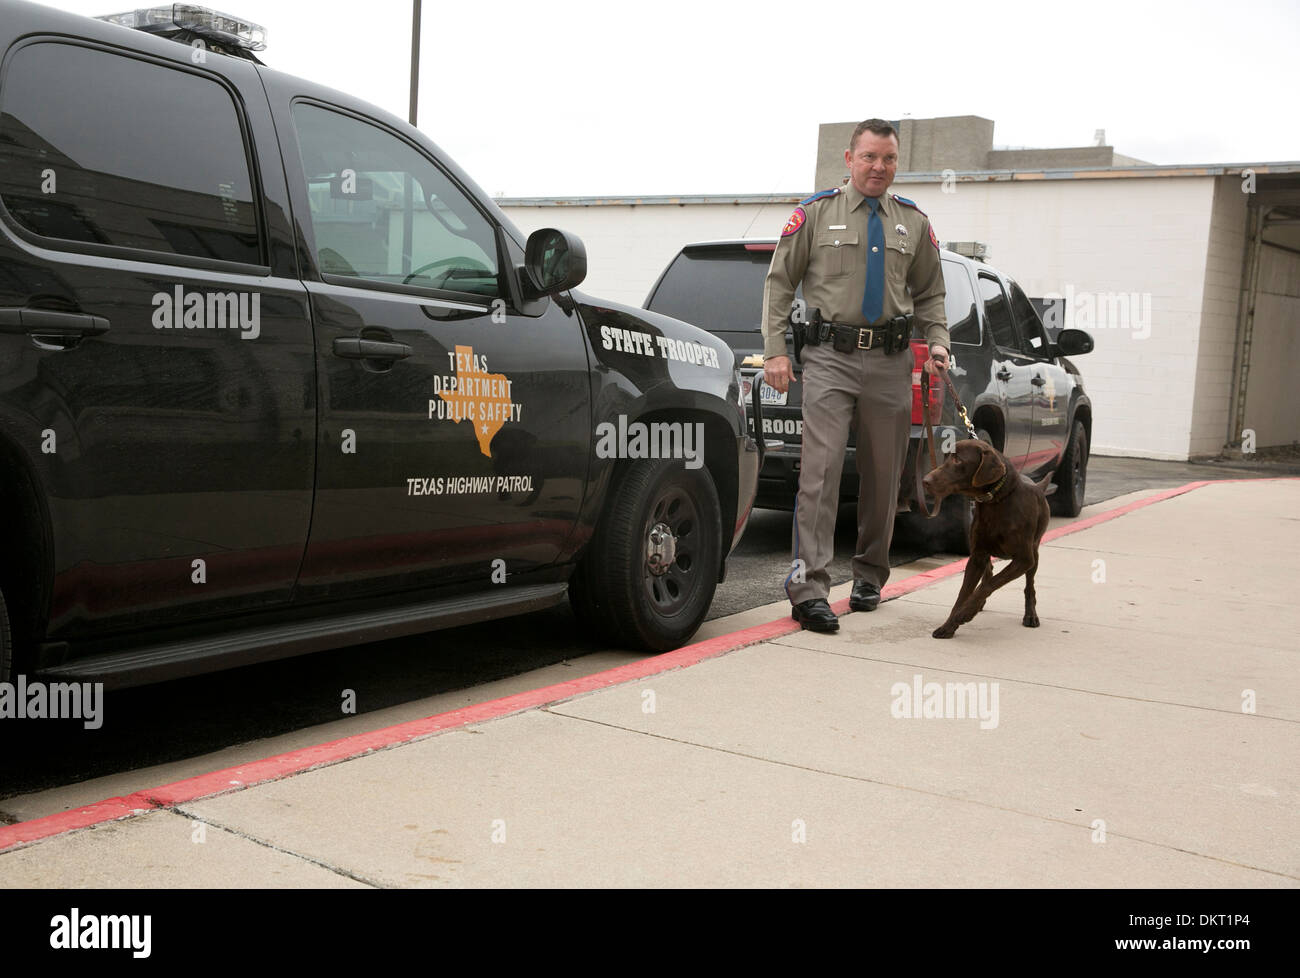 Texas Département de l'agent de sécurité à chien qui a récemment terminé le programme de formation de chien Banque D'Images